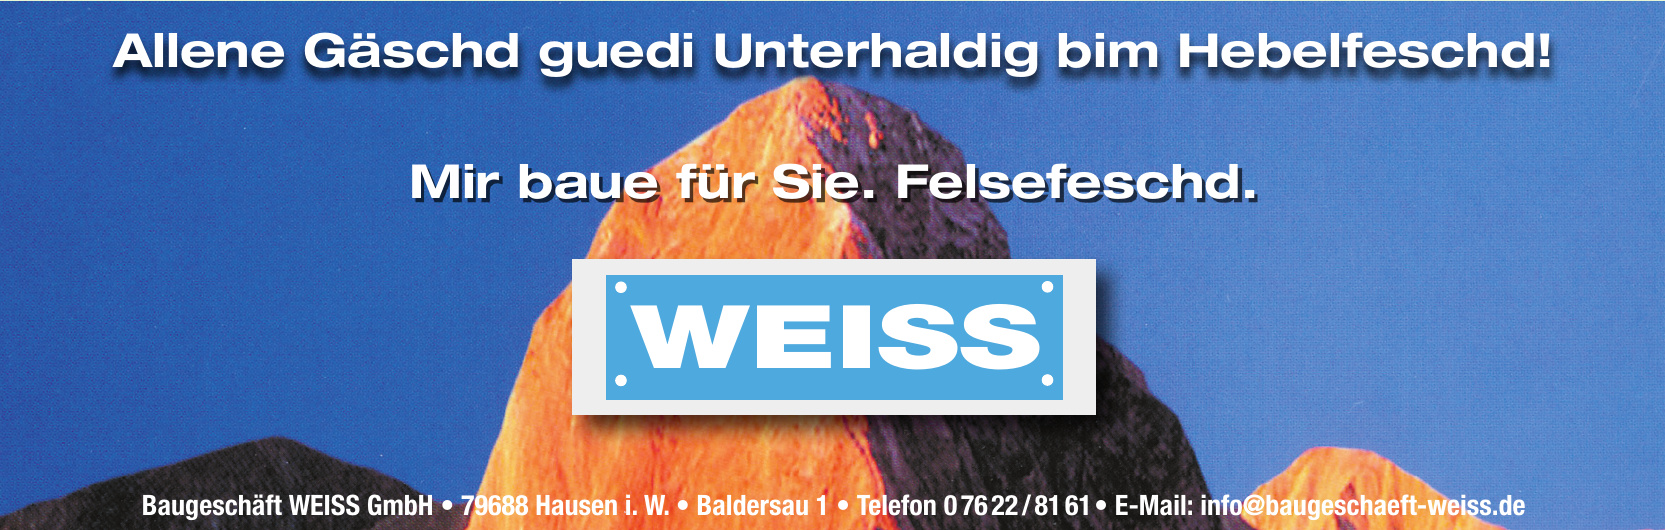 Baugeschäft Weiss GmbH